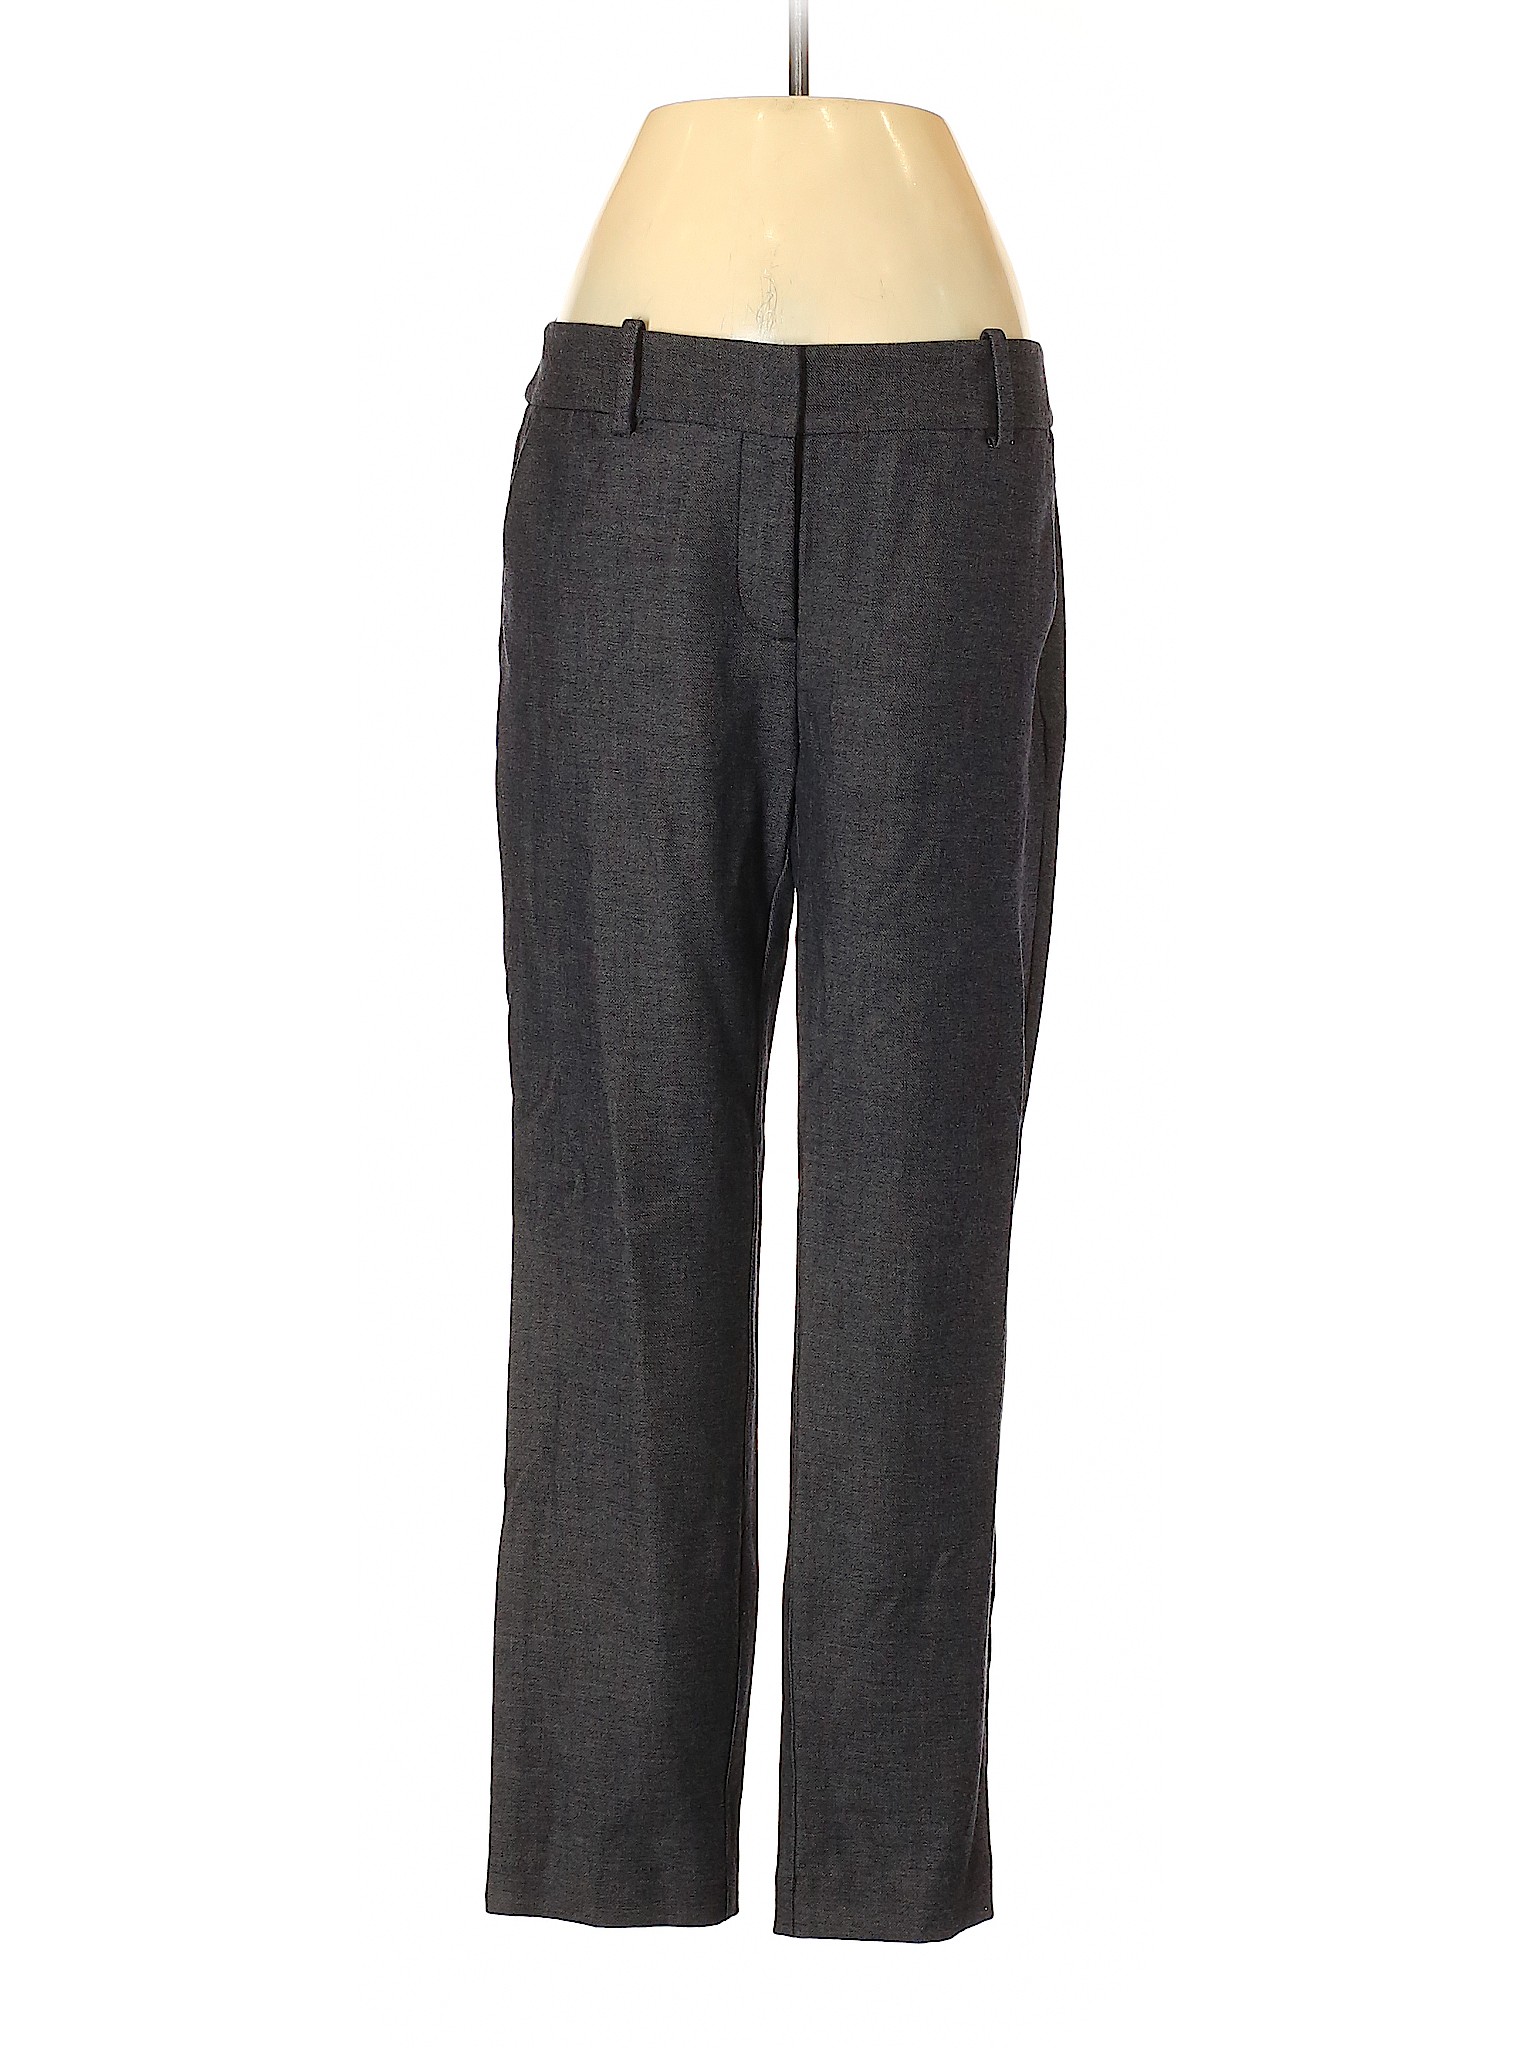 Ann Taylor Factory Women Gray Dress Pants 4 | eBay